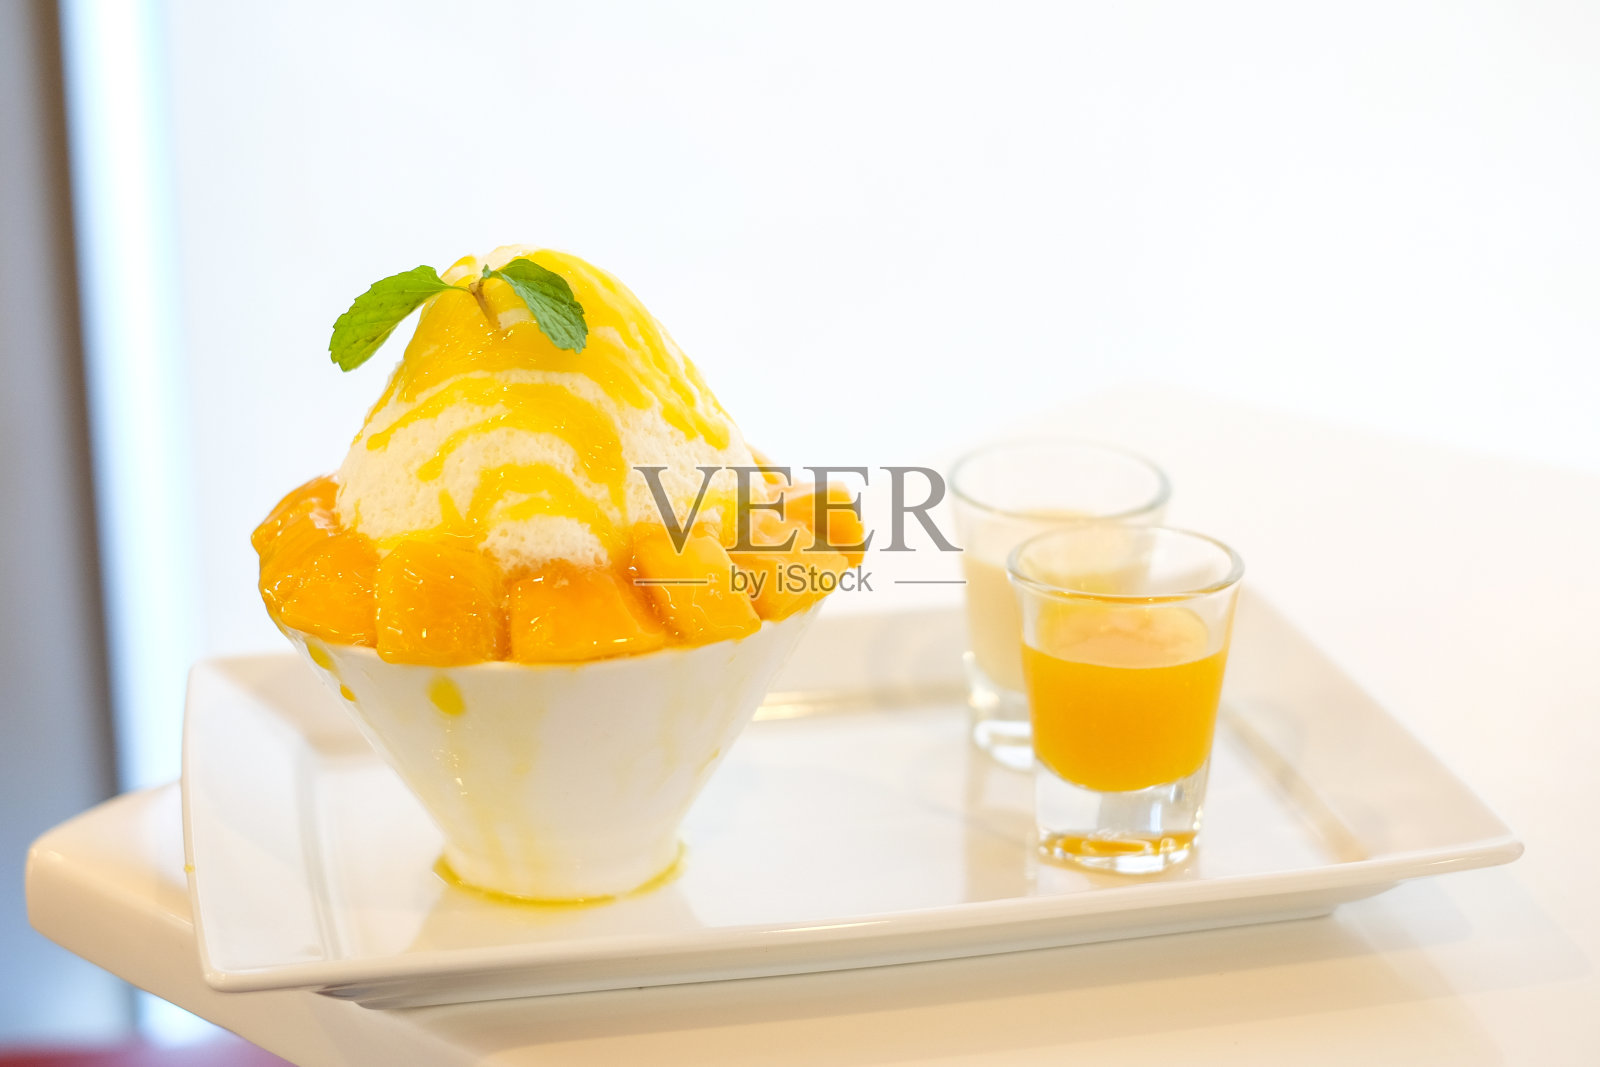 芒果冰淇淋(日本刨冰口味的芒果冰淇淋)盛在白色的碗里，配上黄色的芒果酱和白色的牛奶，口感甜美。照片摄影图片